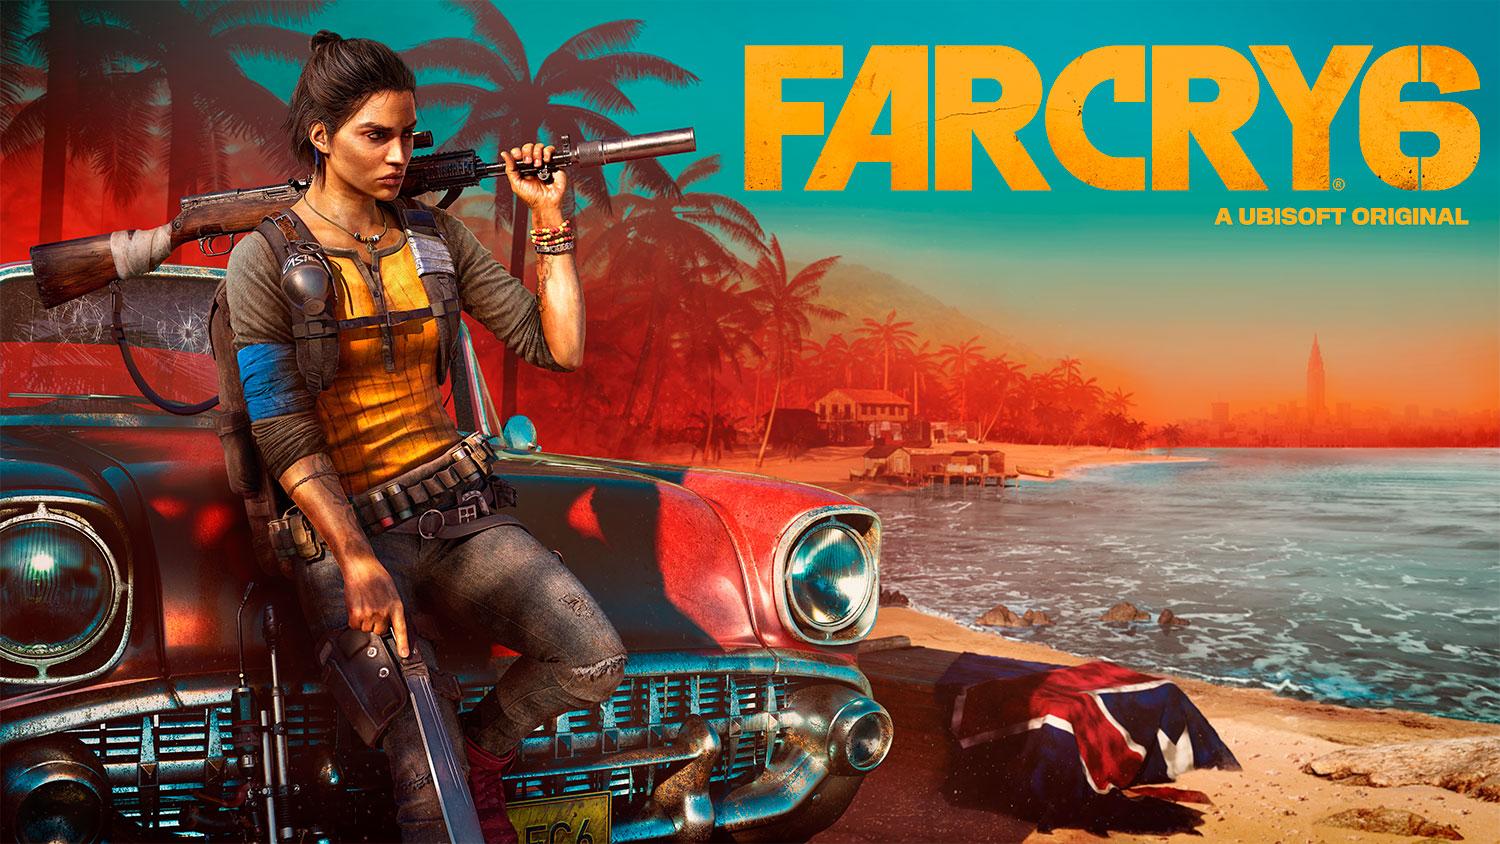 Consulta todas las configuraciones mínimas y recomendadas para ejecutar Far Cry 6 en PC